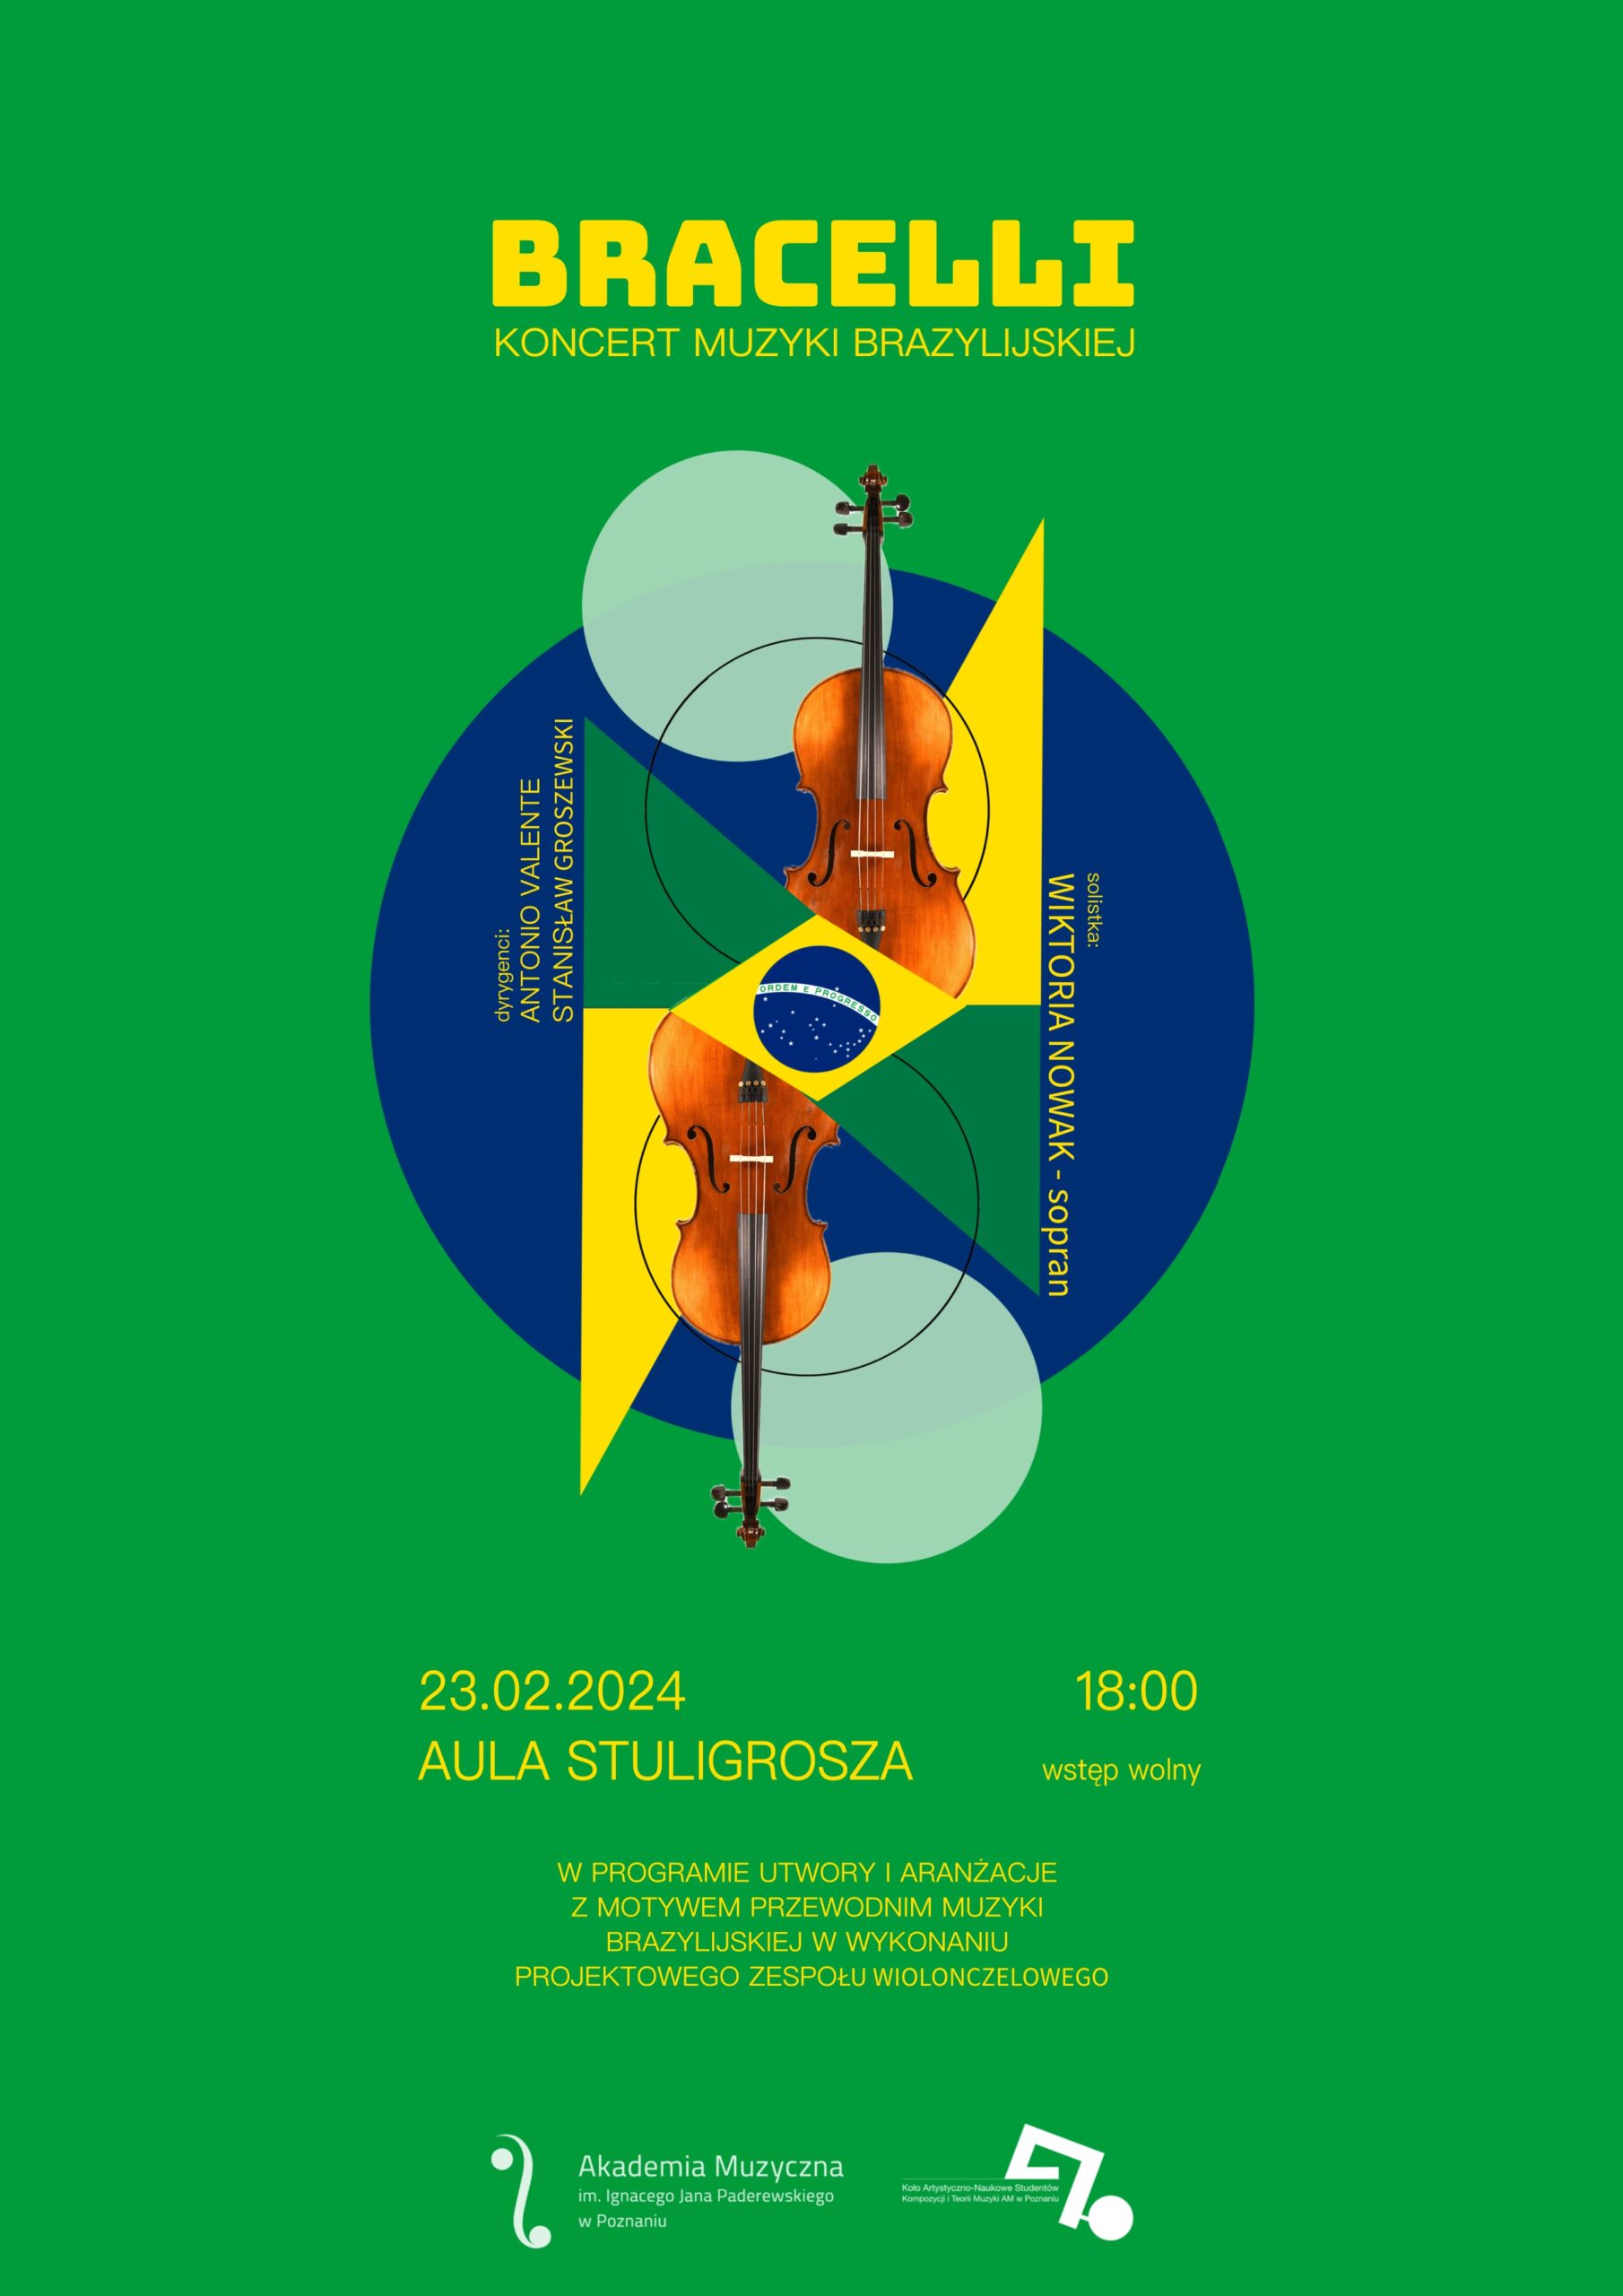 Afisz zapowiada koncert muzyki brazylijskiej pt. Bracelli w dniu 23.02.2024